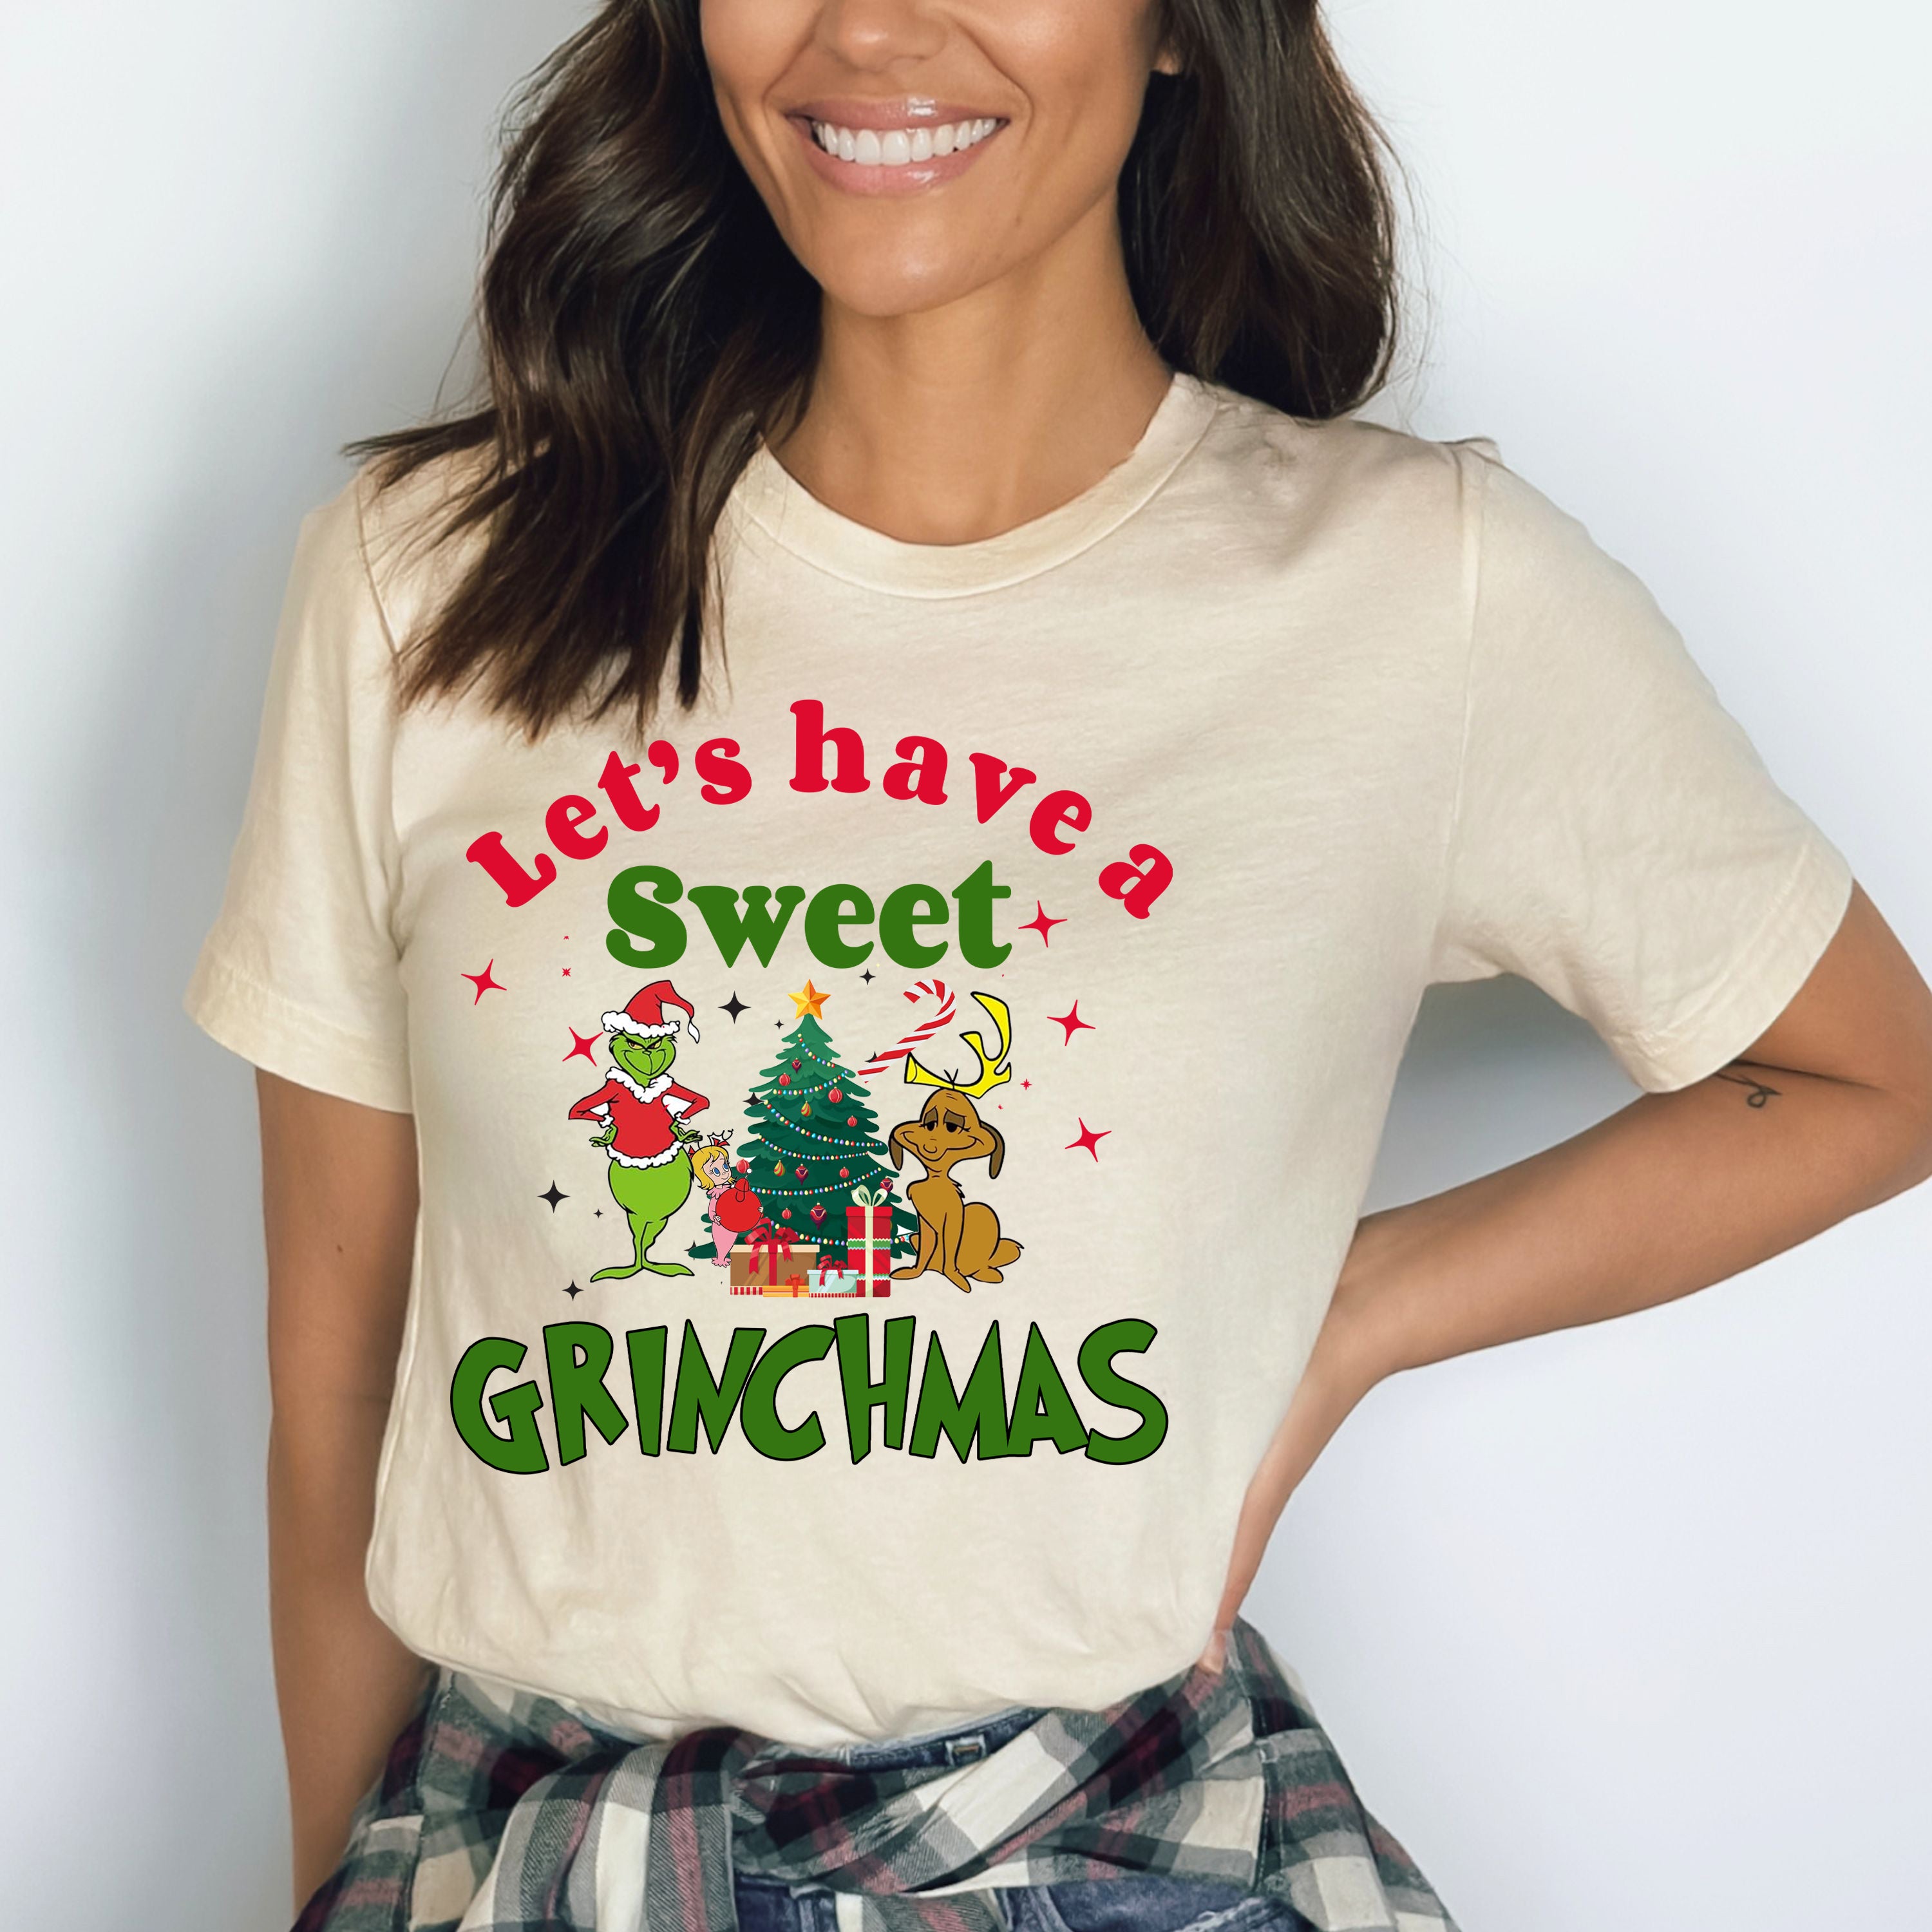 Let's Have a Sweet Grinchmas - Bella Canvas